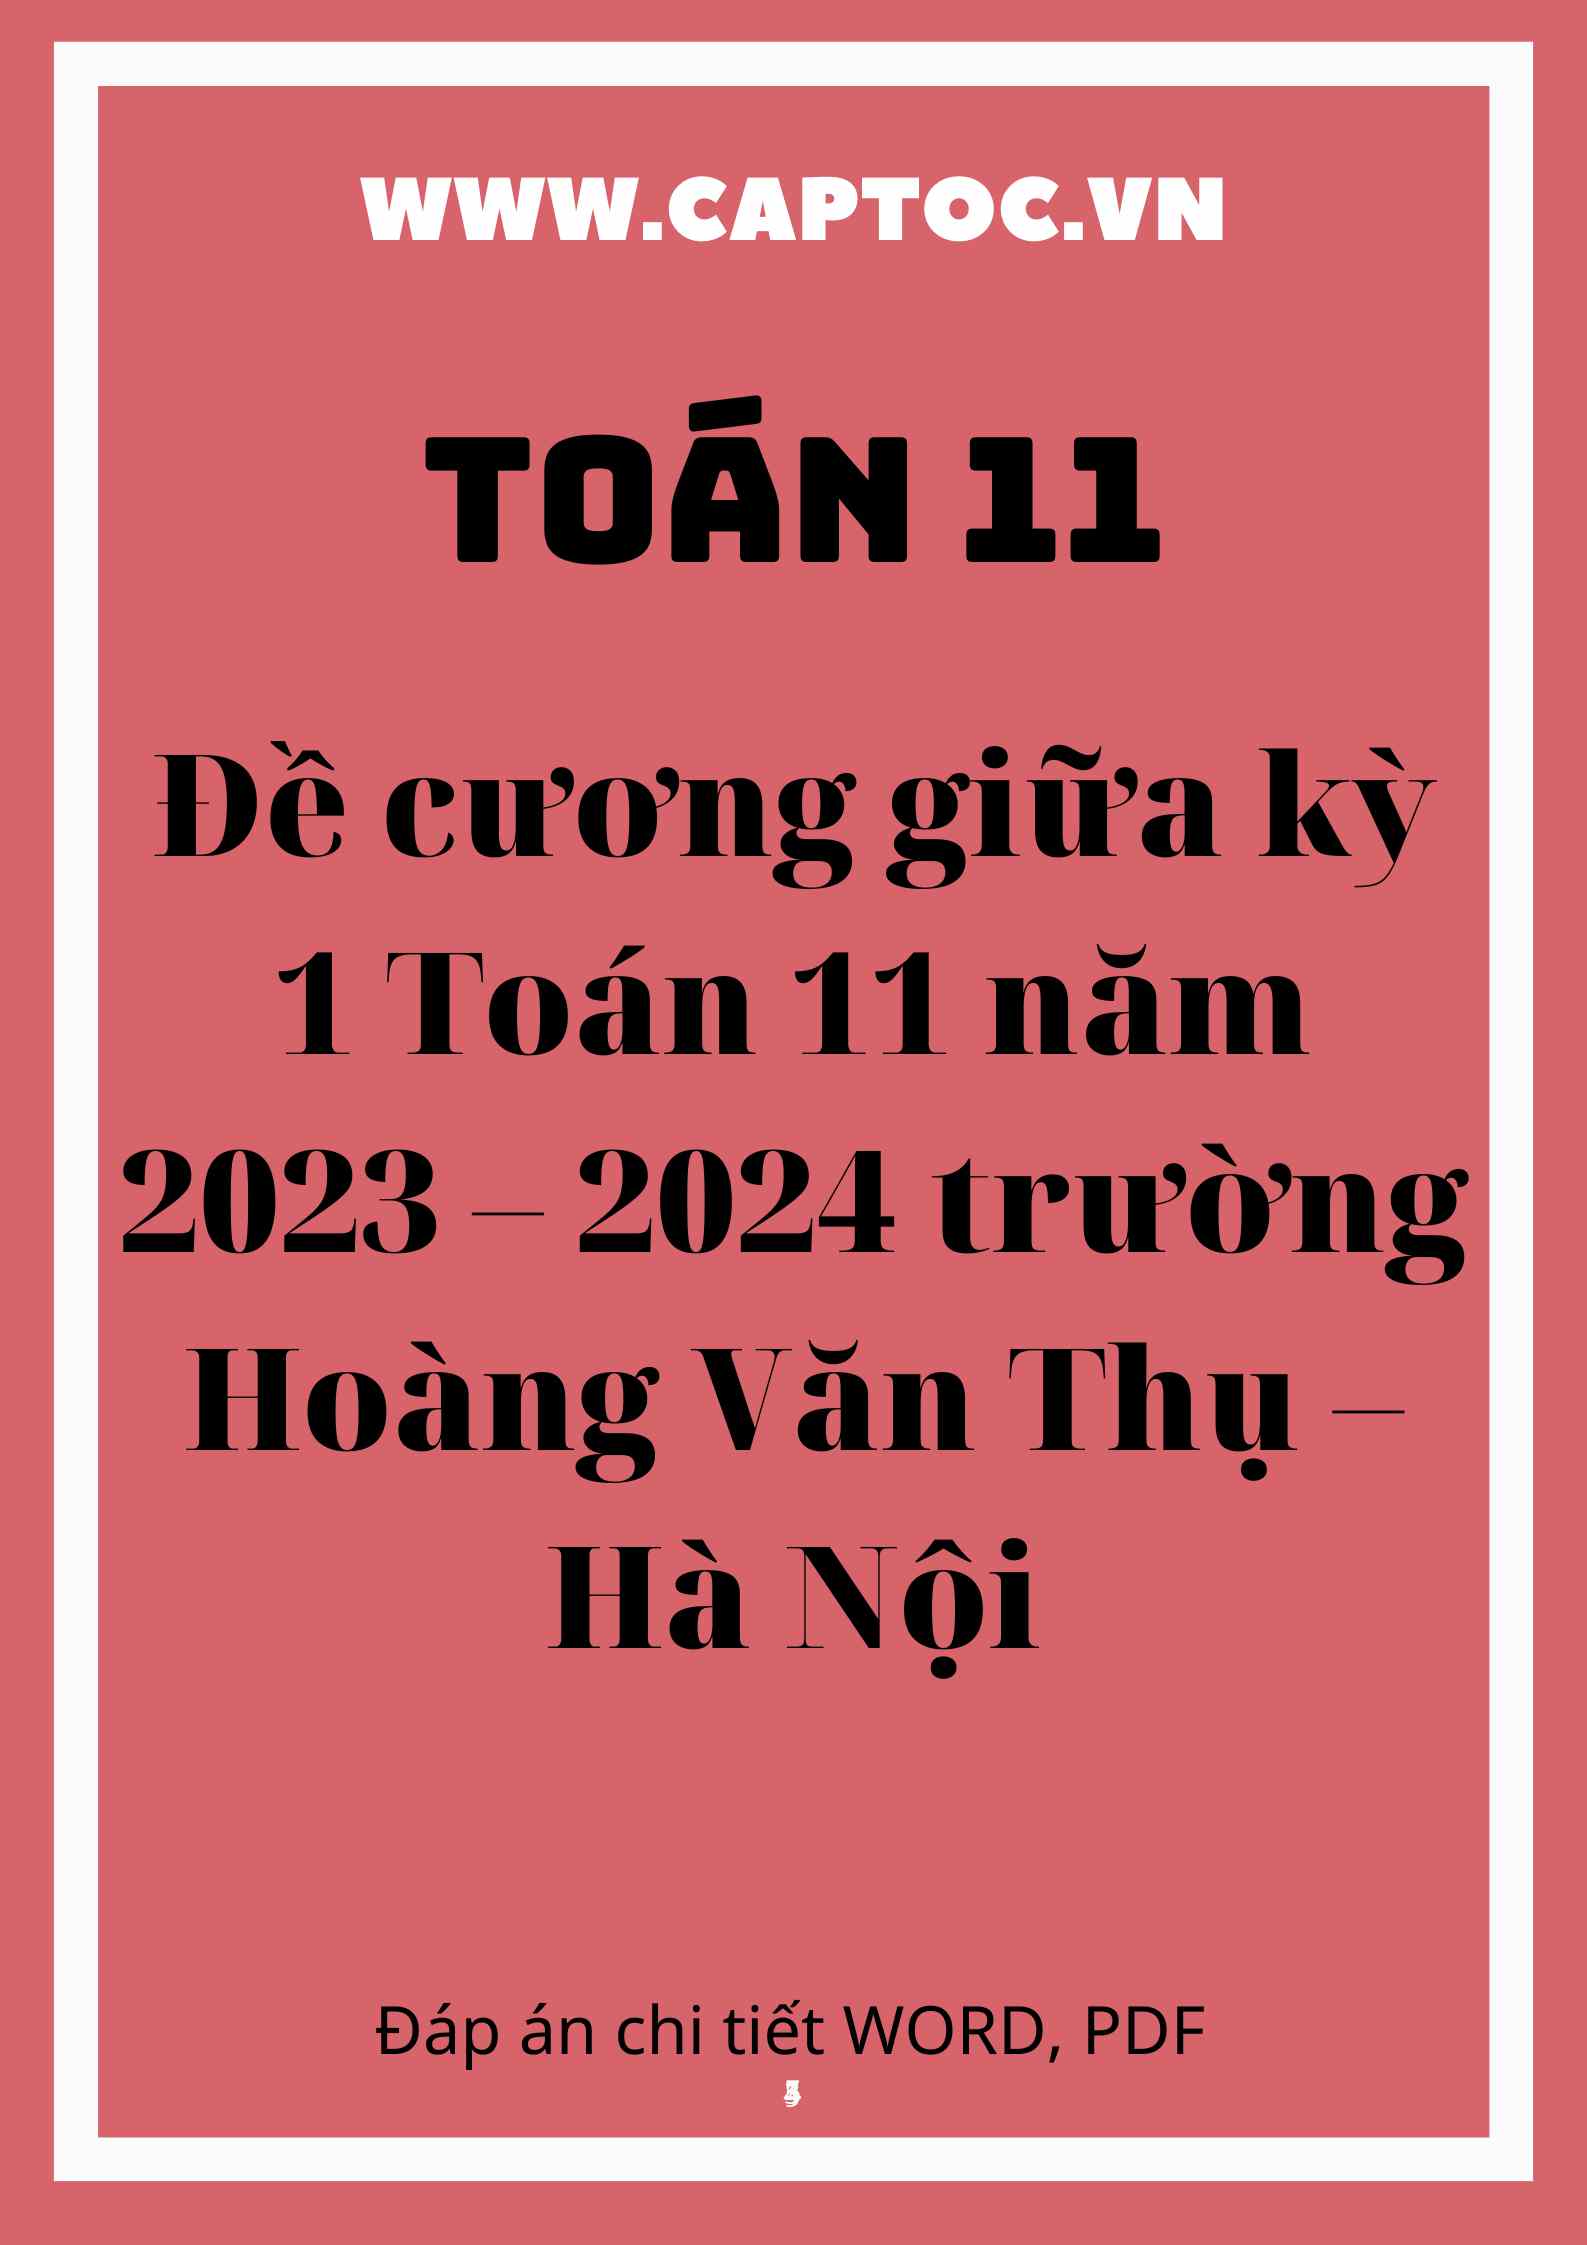 Đề cương giữa kỳ 1 Toán 11 năm 2023 – 2024 trường Hoàng Văn Thụ – Hà Nội